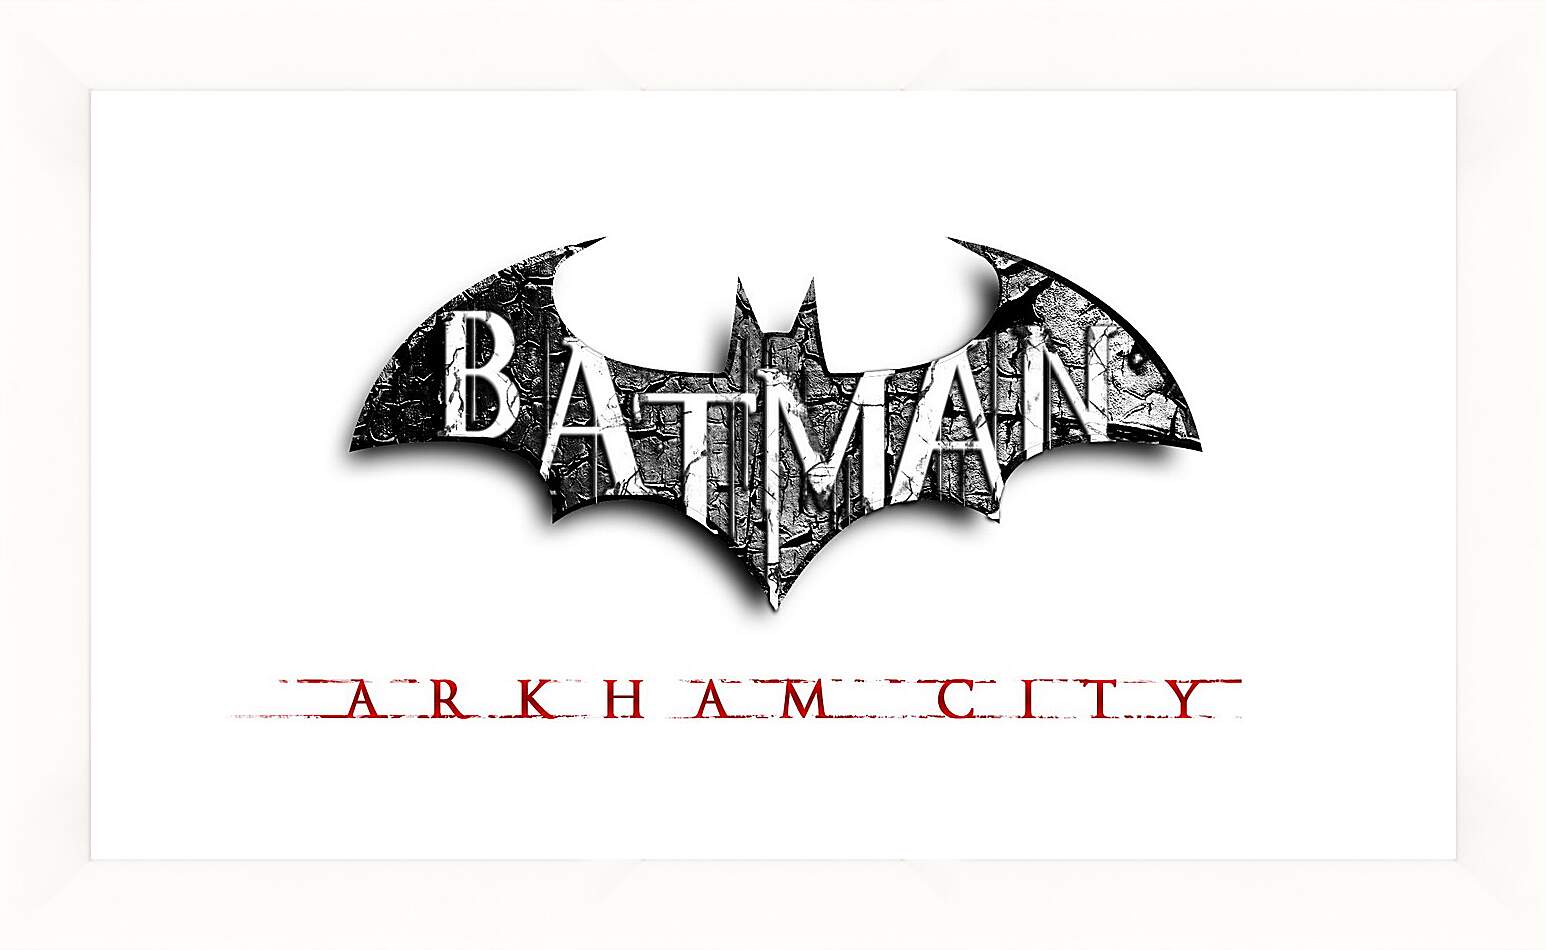 Картина в раме - Batman: Arkham City
